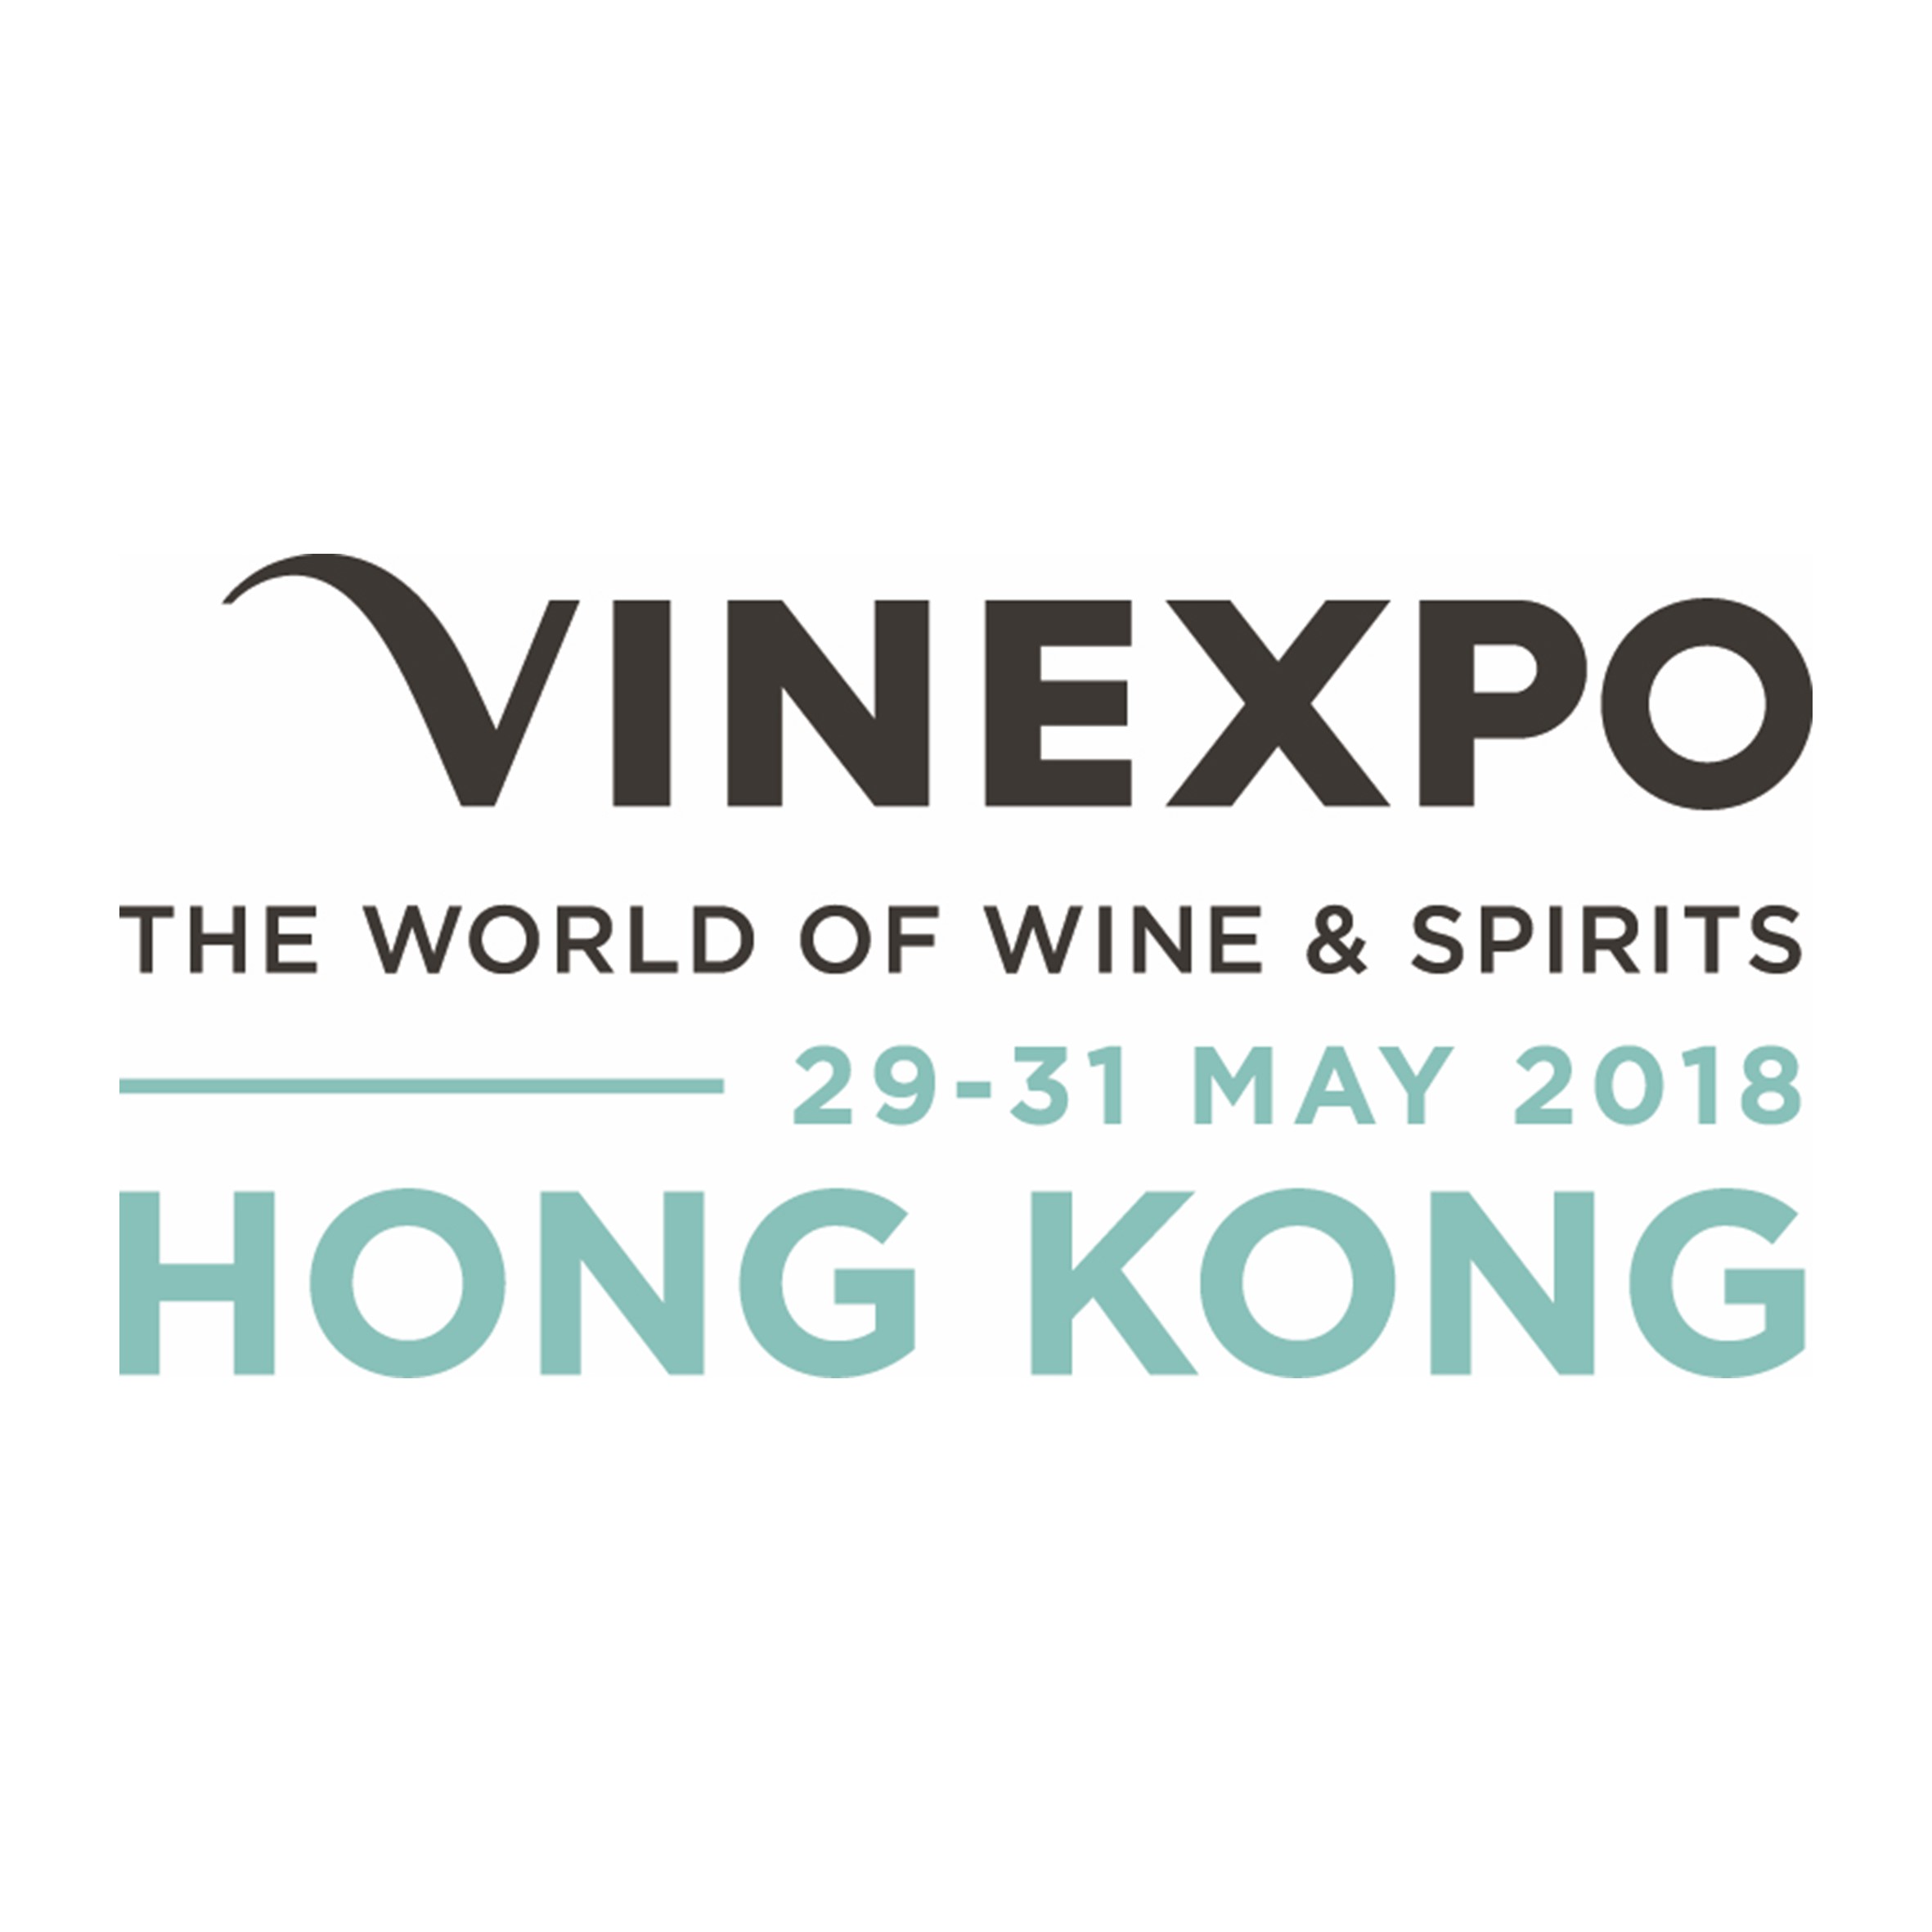 Vinexpo Hong Kong Logo 2018 - Confidence boost